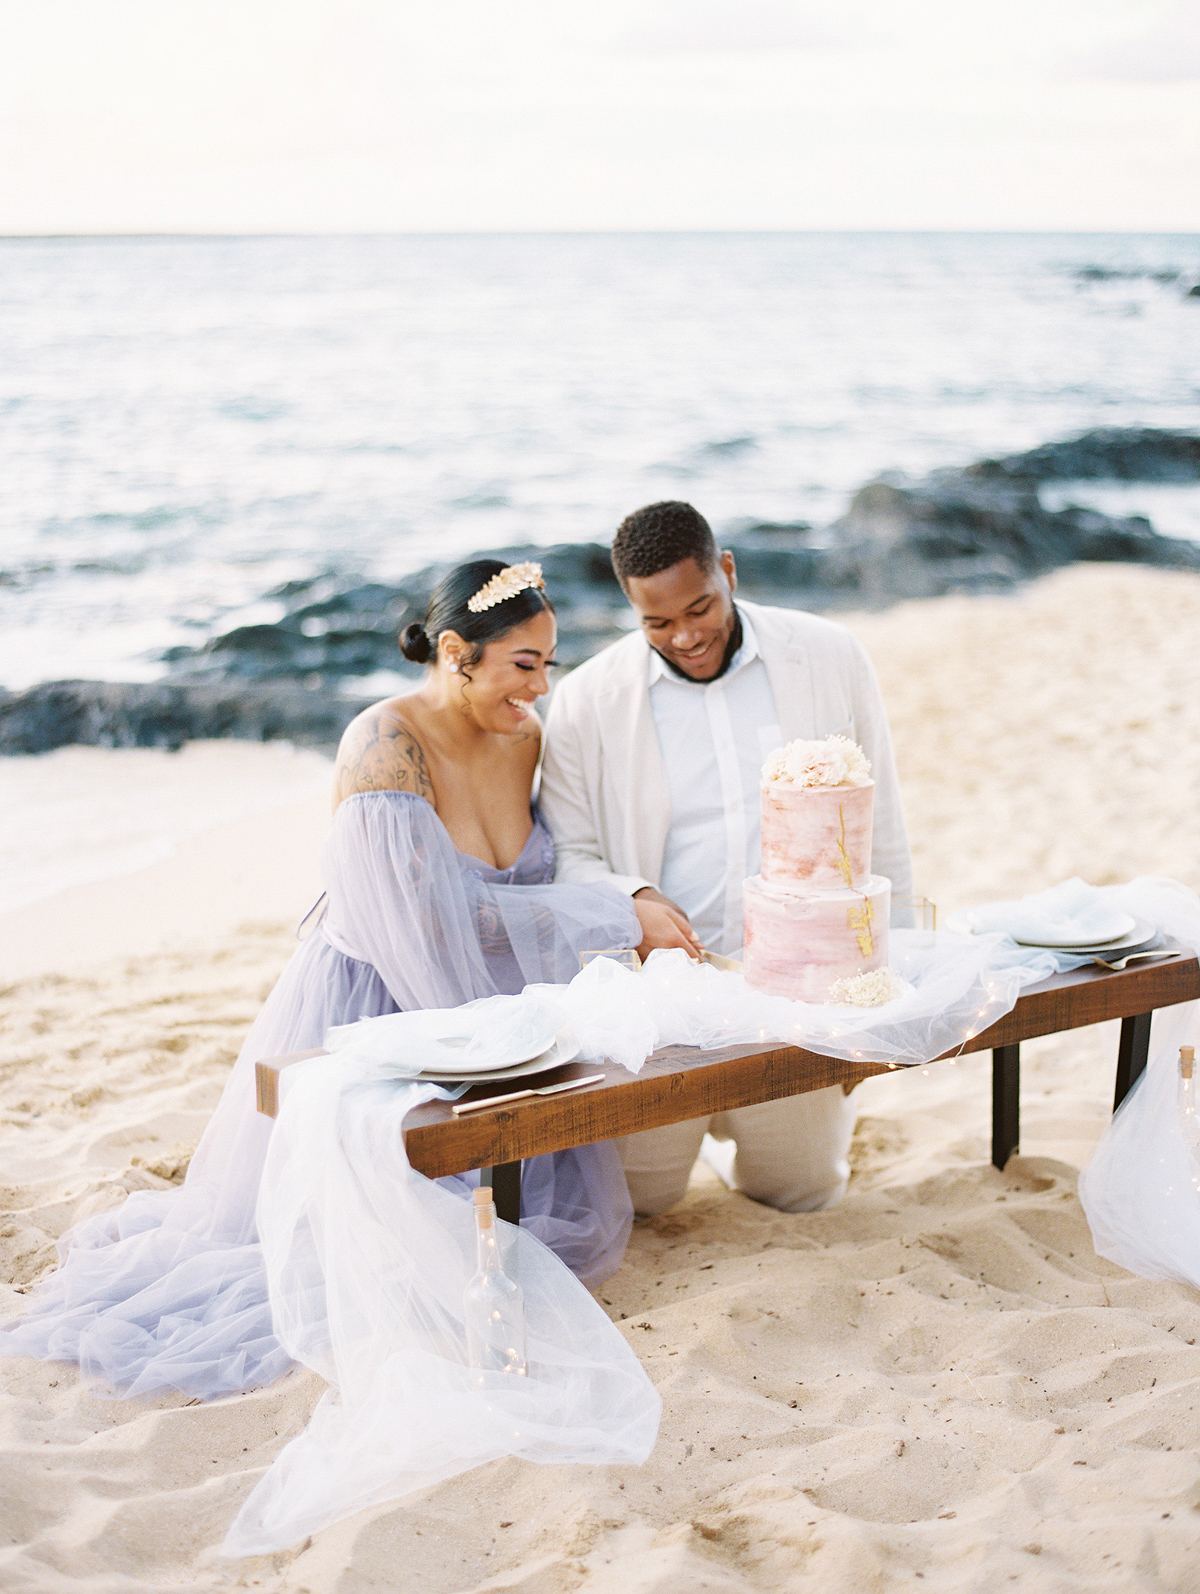 Unique Oahu elopement ideas for epic photography!